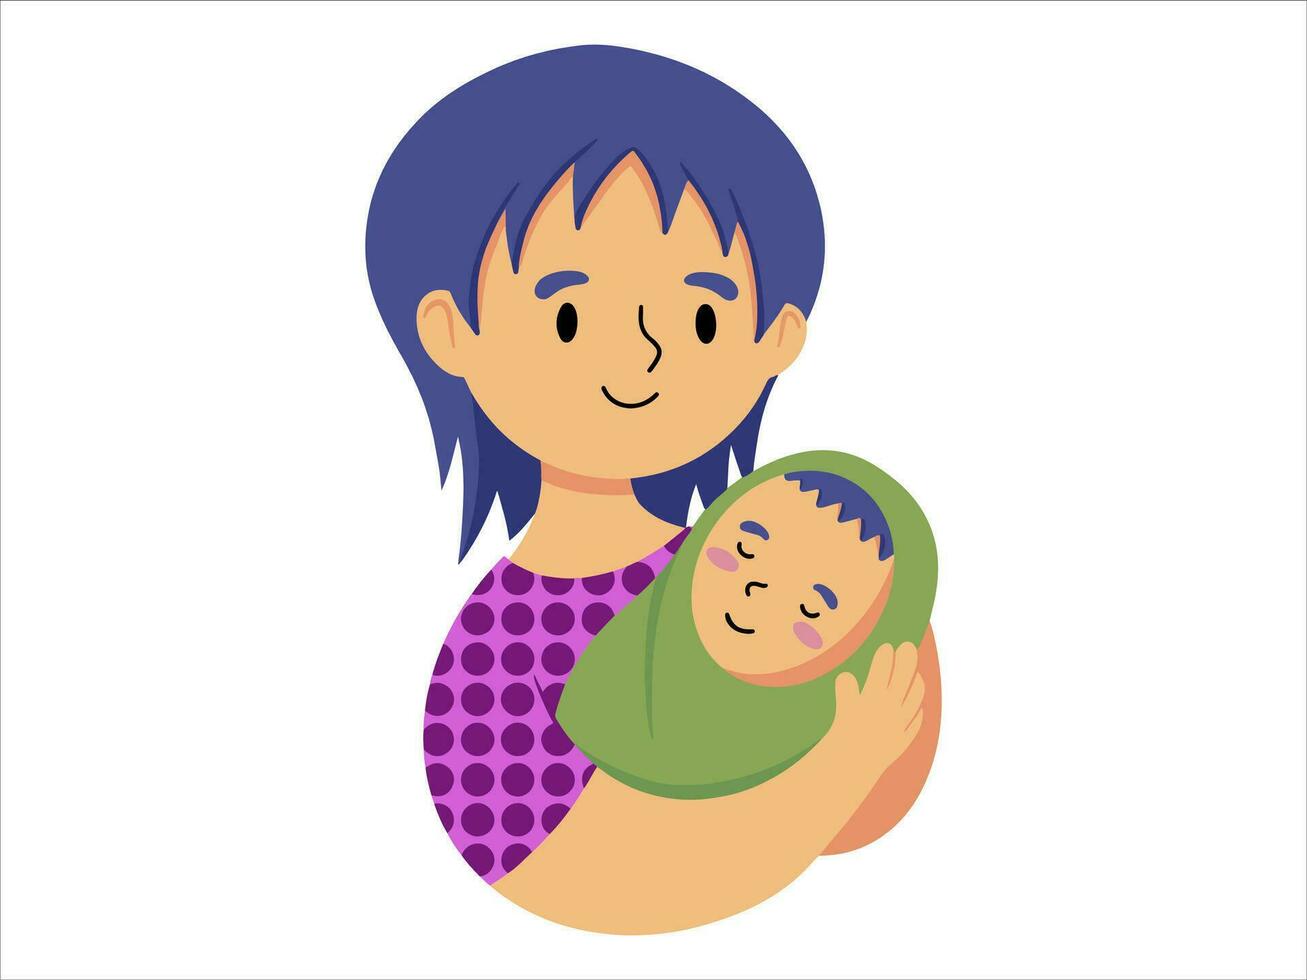 Papai segurando bebê ou avatar ícone ilustração vetor